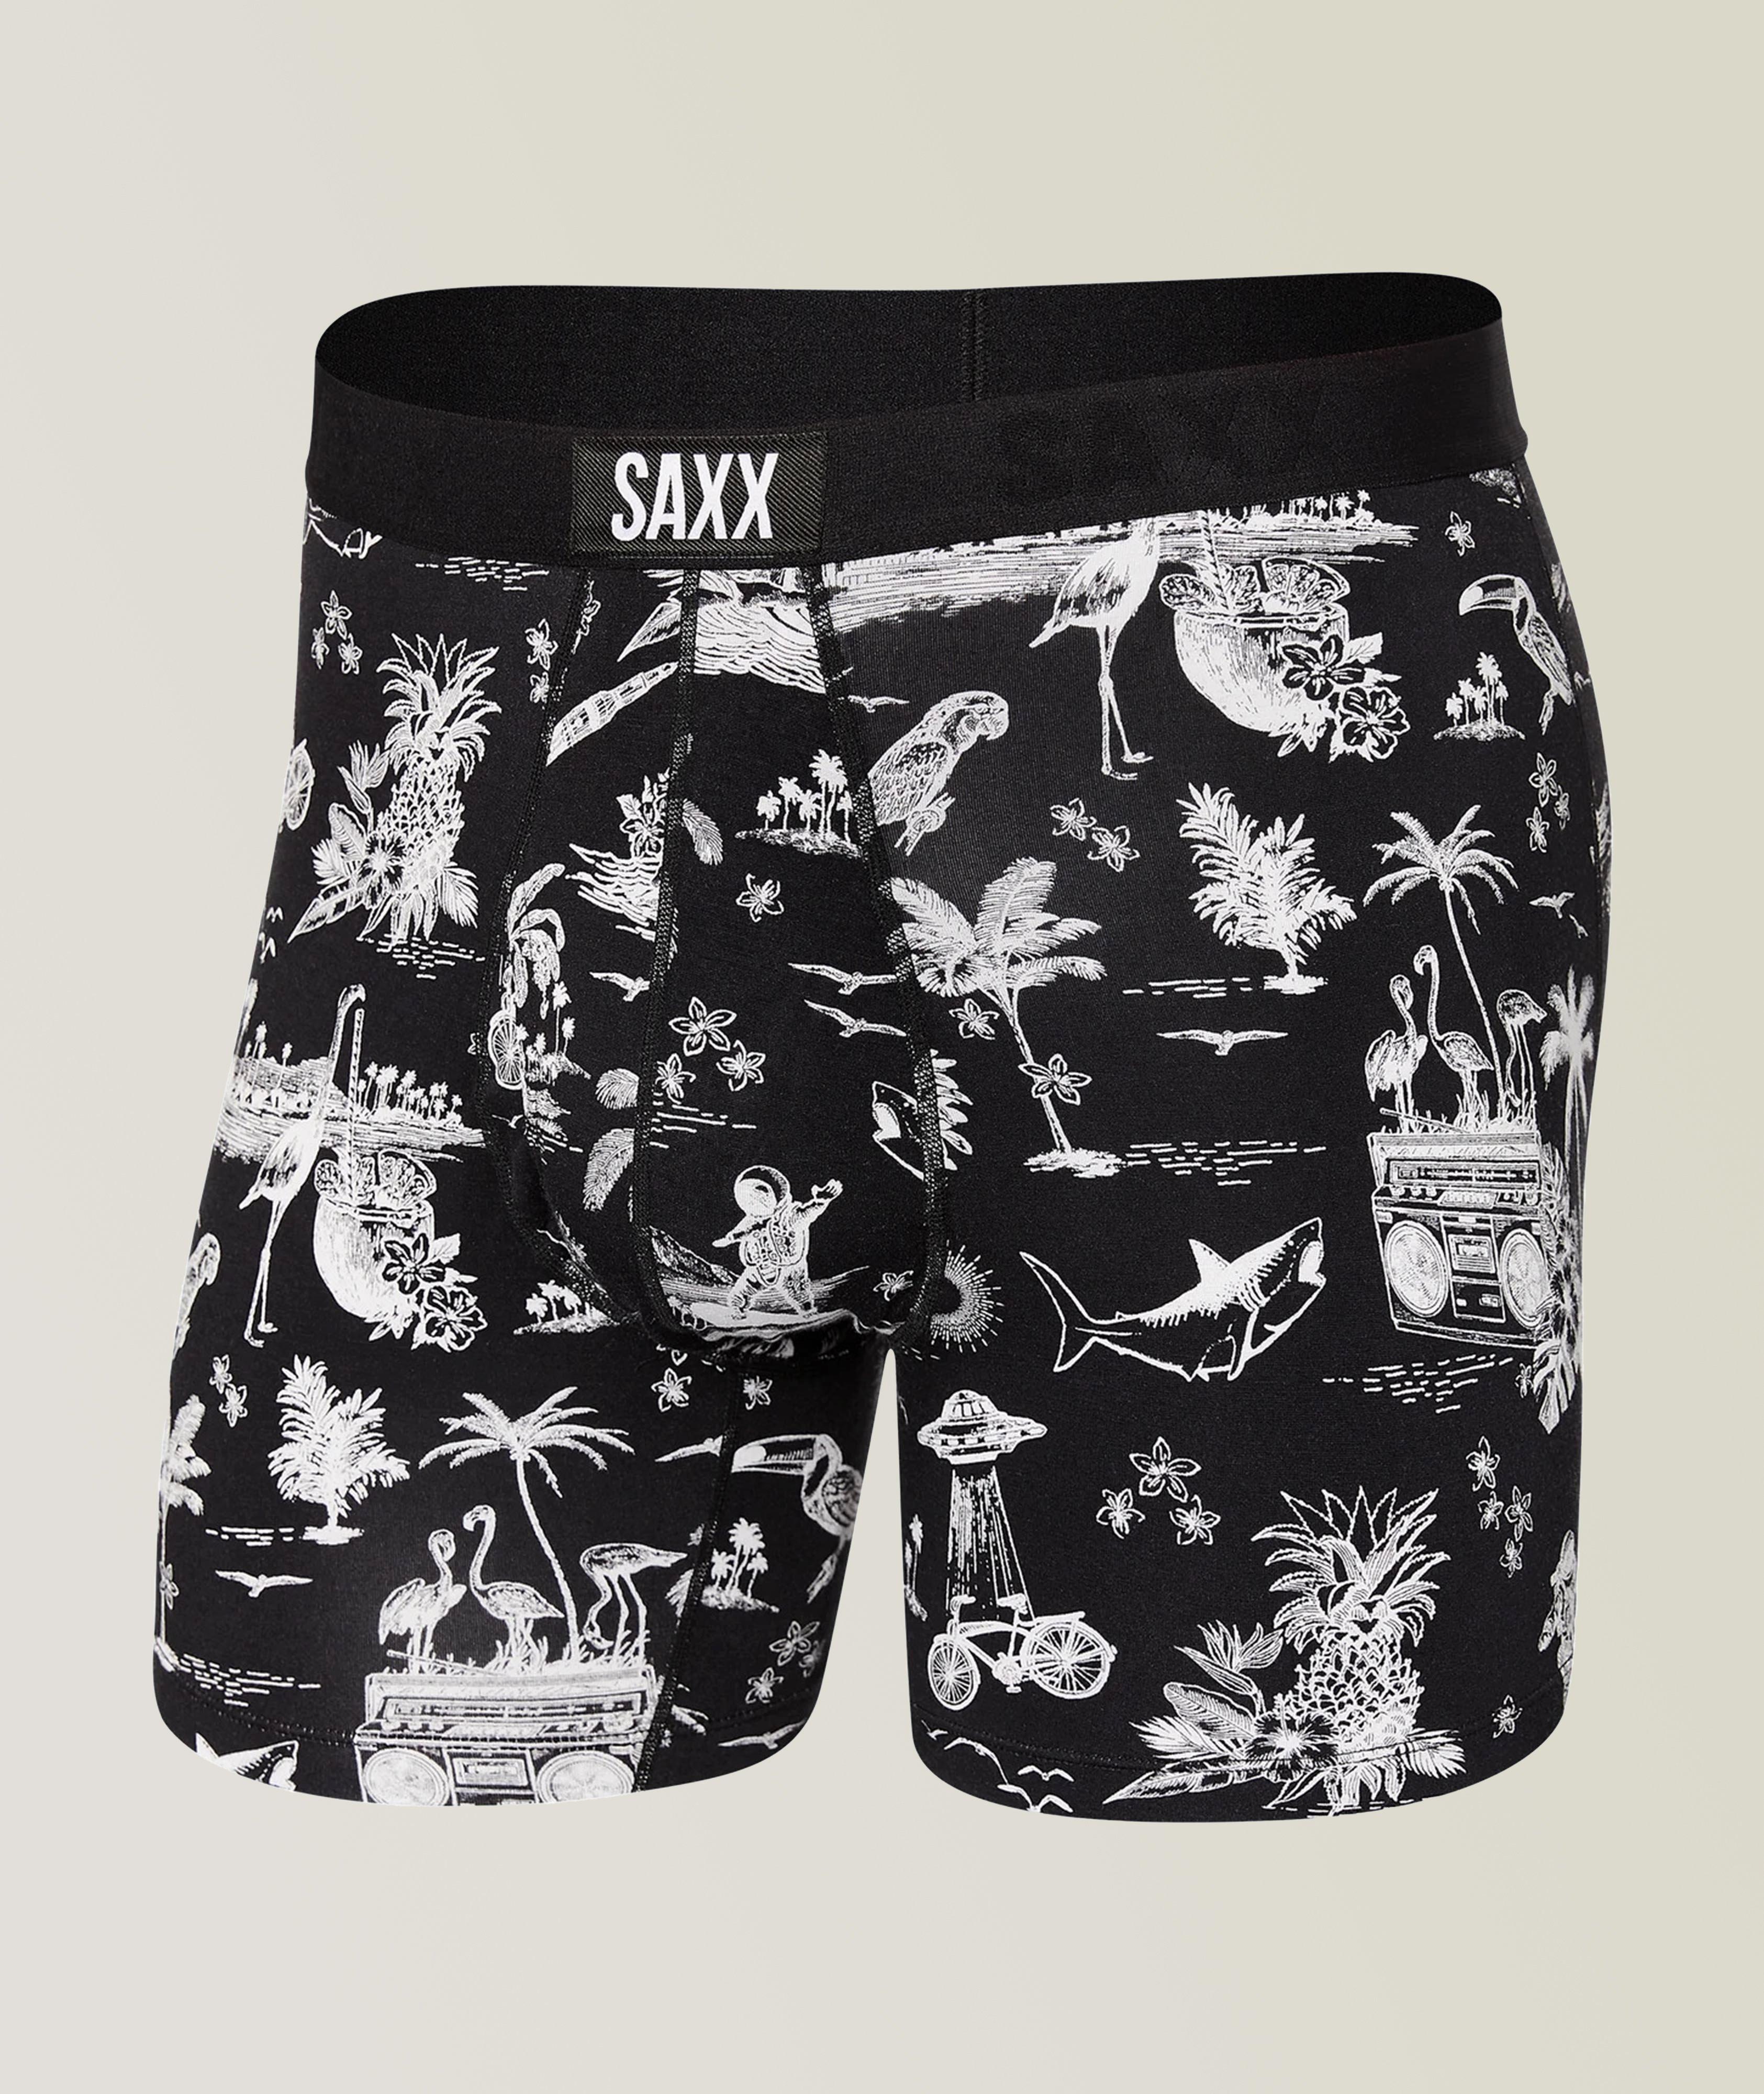 SAXX Ultra Boxer Briefs, Underwear